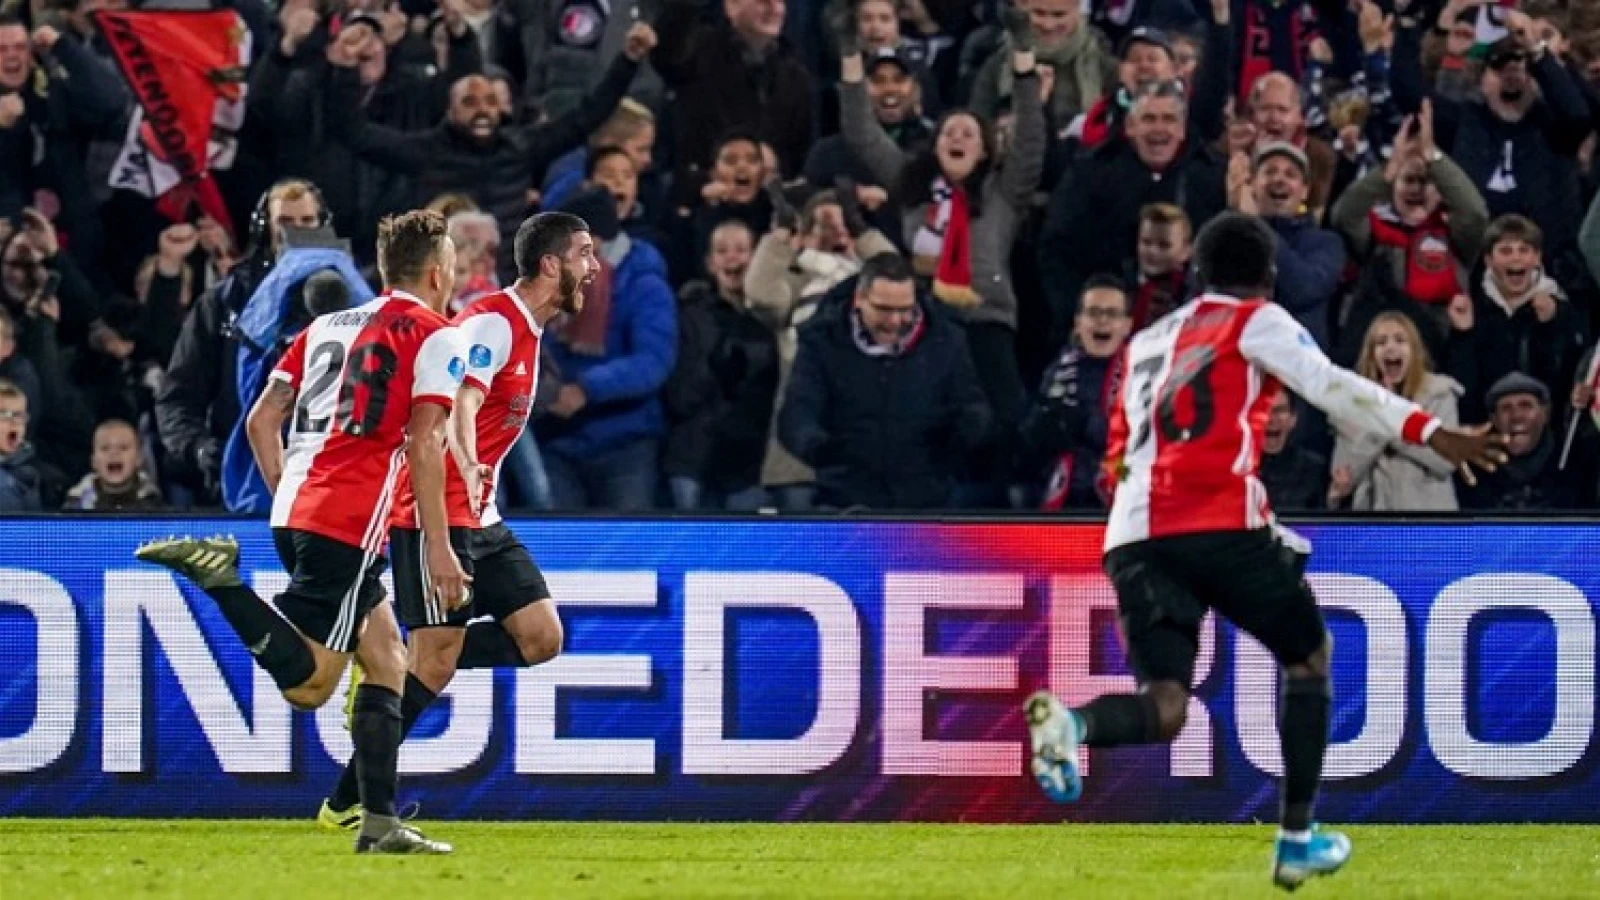 De kranten: 'Feyenoord ontsnapt aan een afgang tegen RKC'